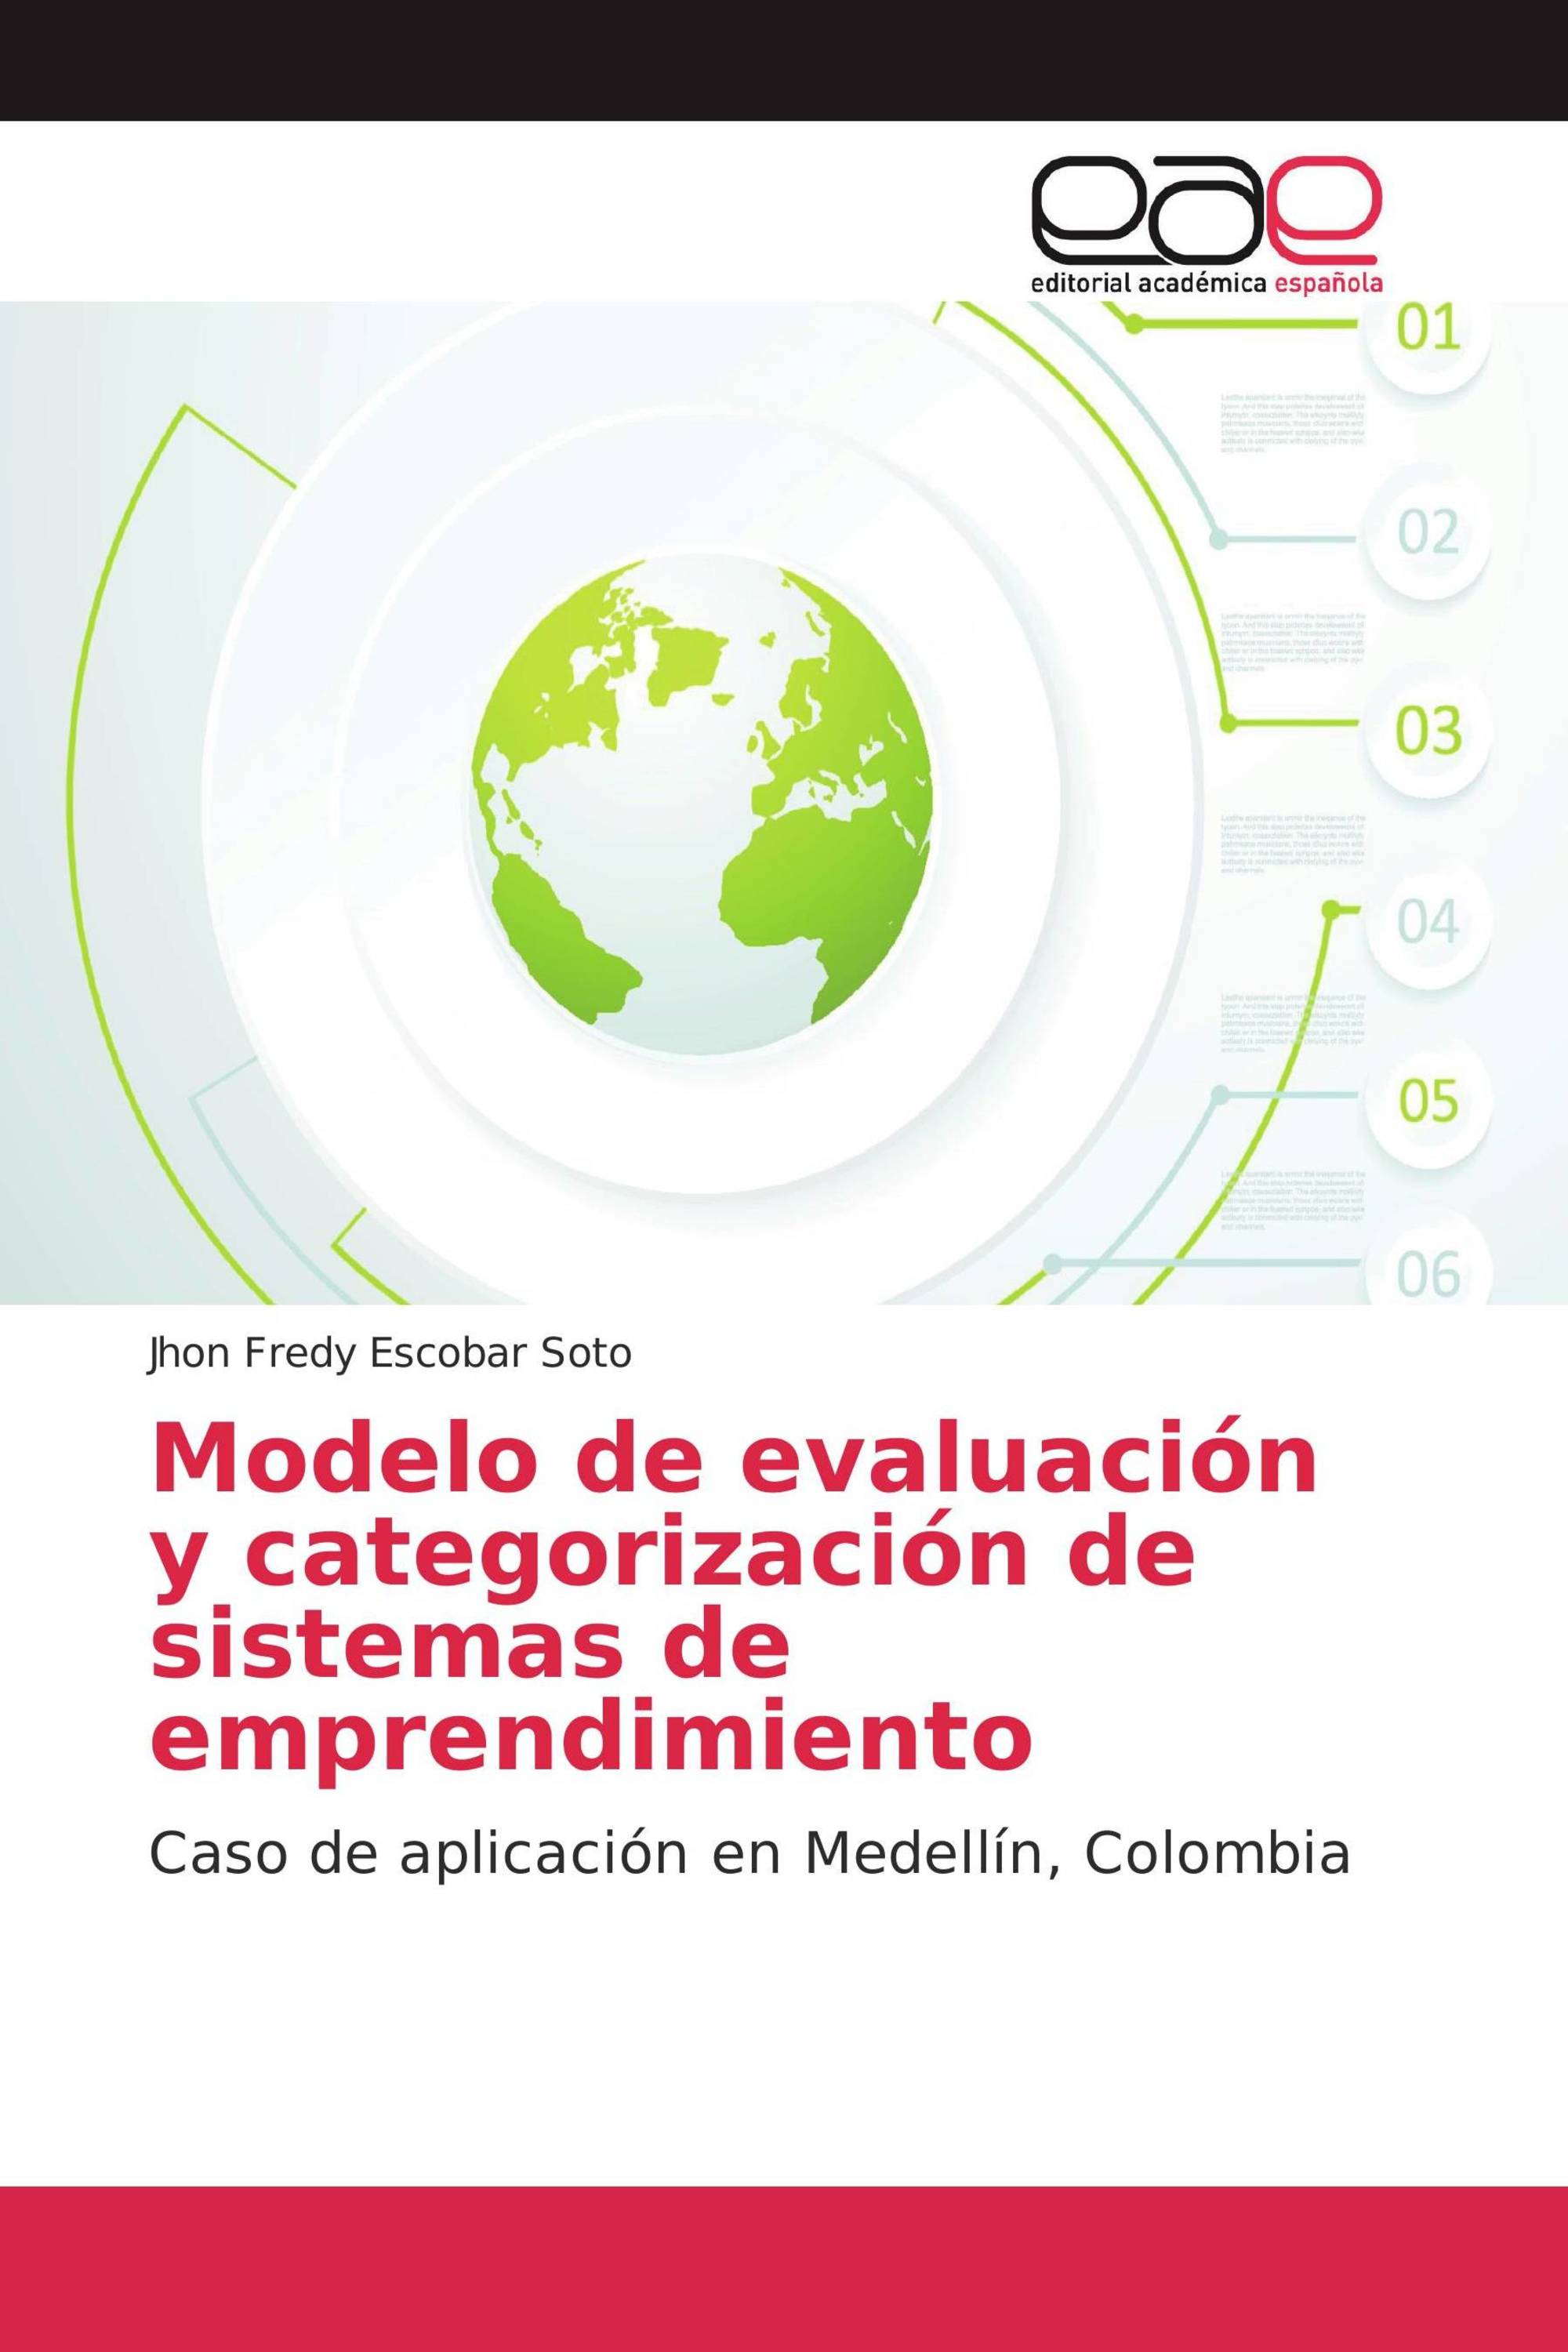 Modelo de evaluación y categorización de sistemas de emprendimiento